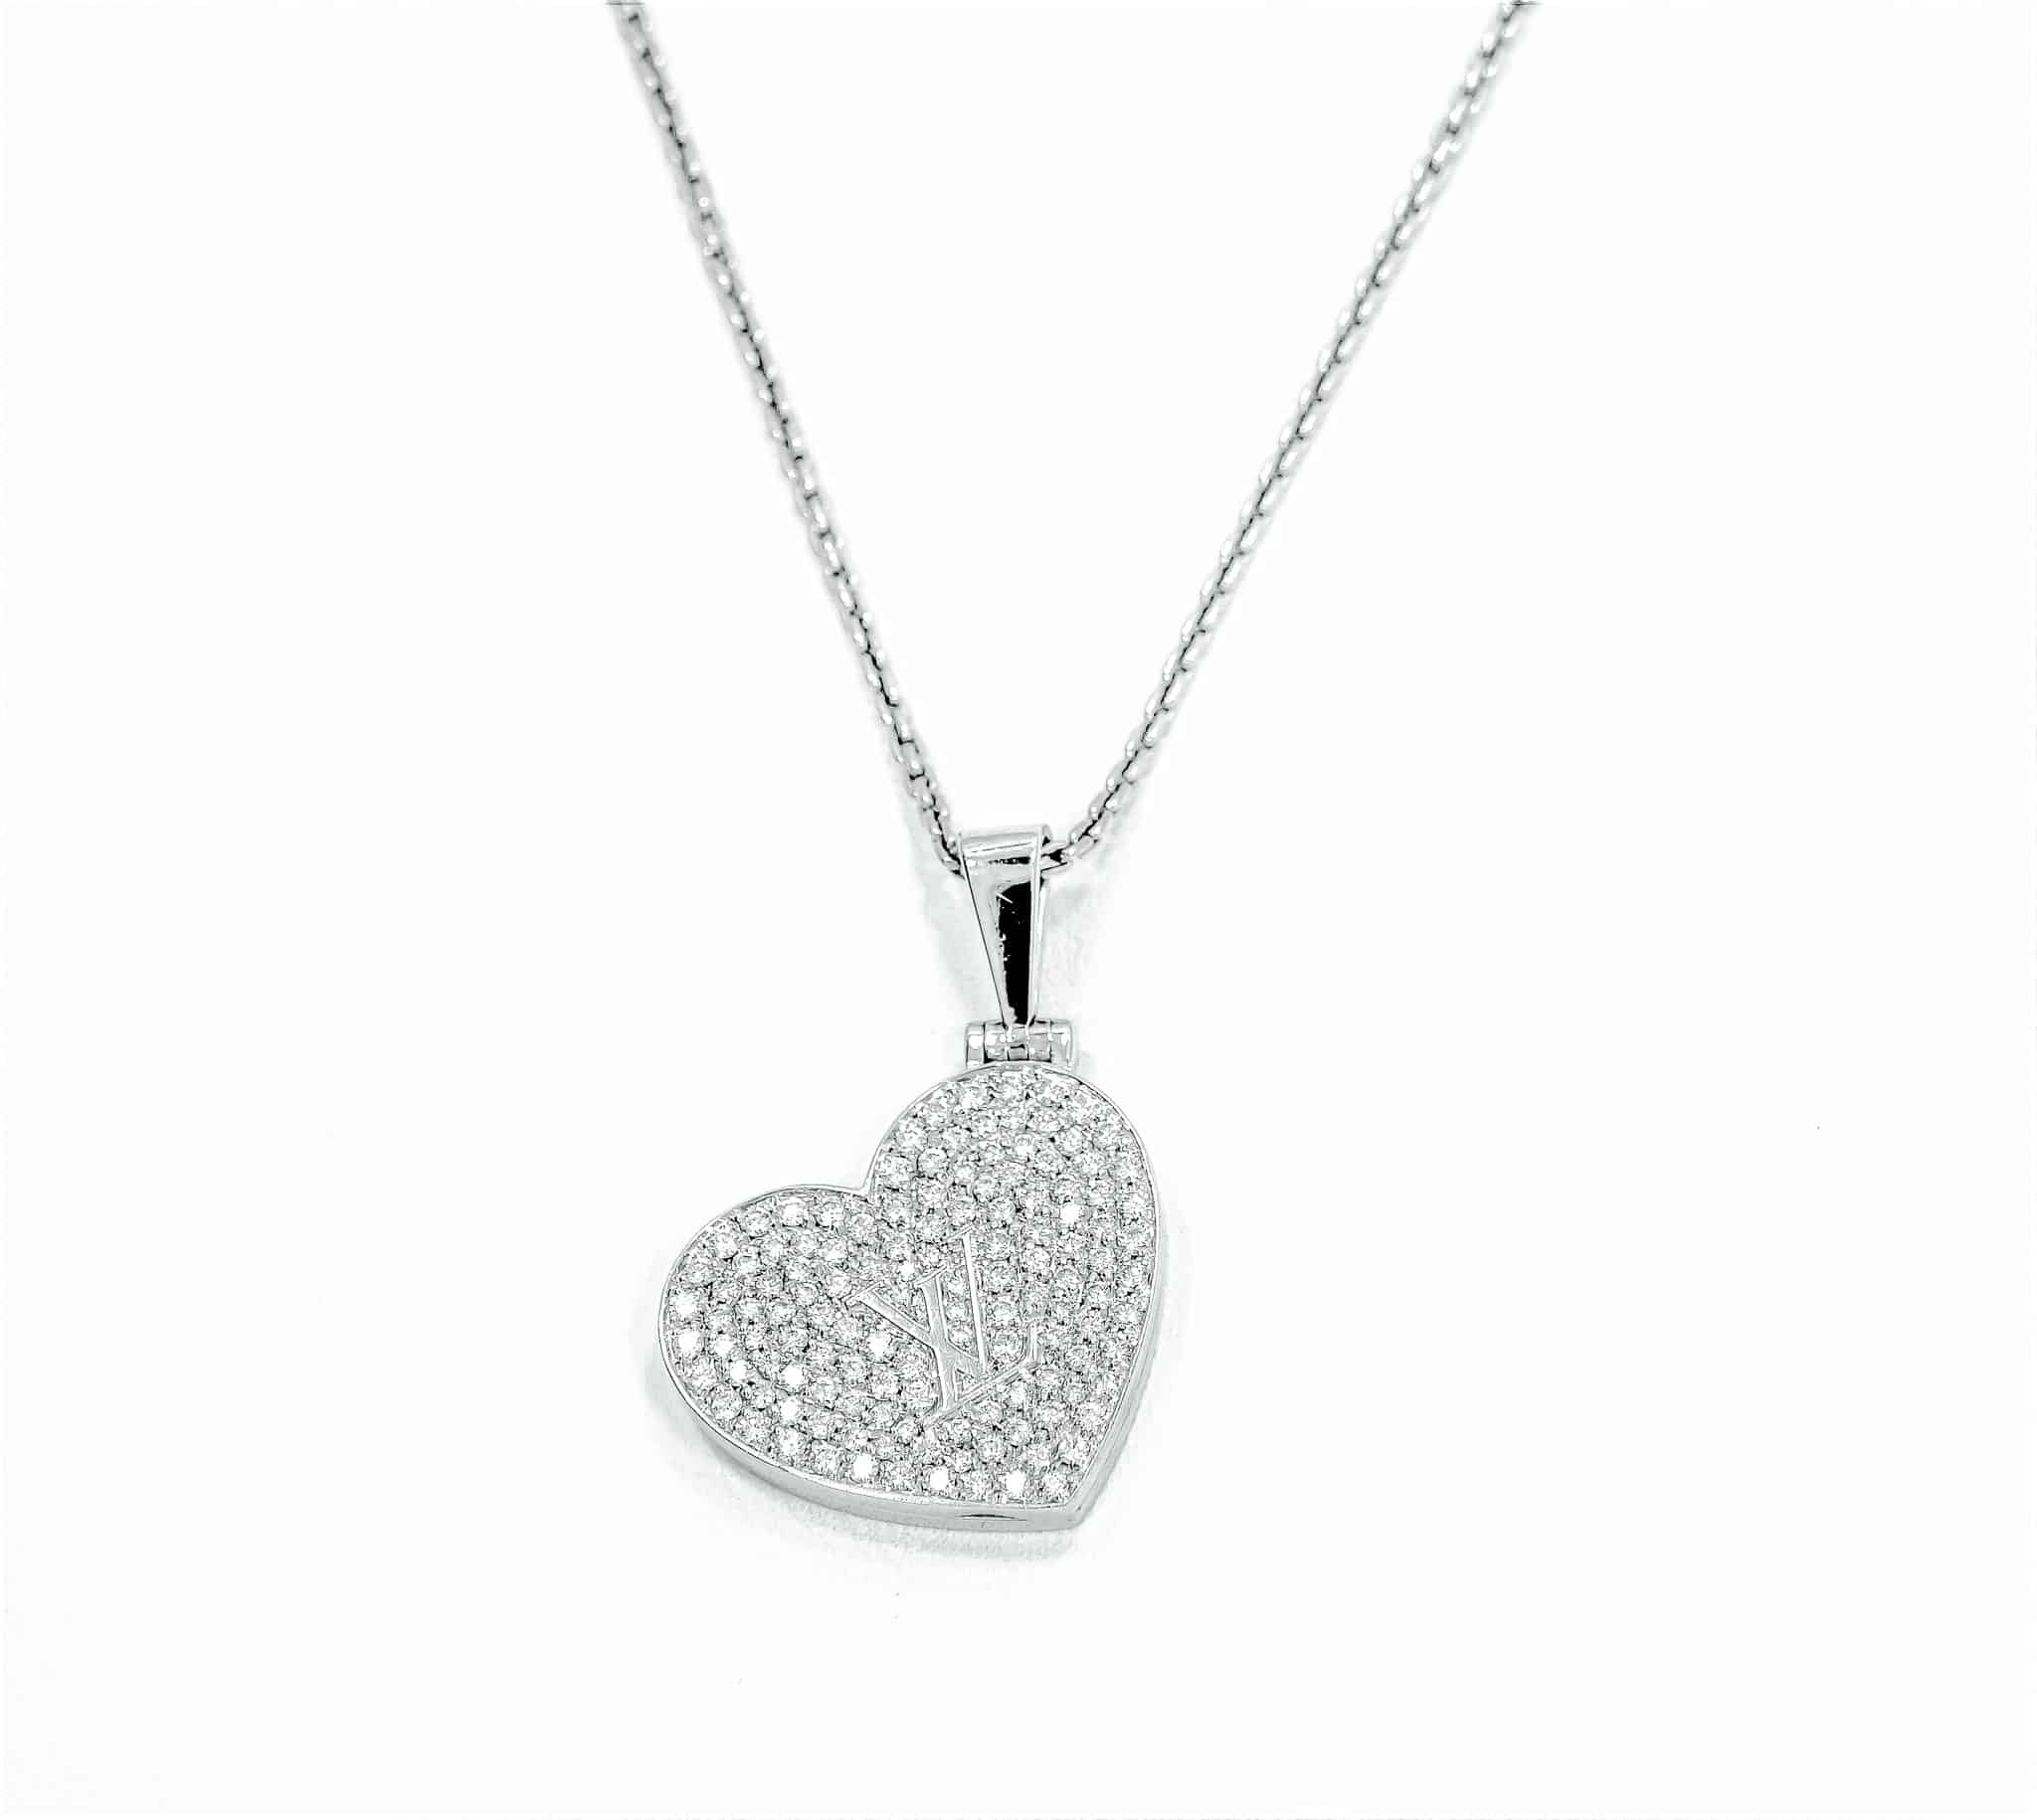 Lady's White 18 Karat LV Heart Pendant With 2Tw Round Diamonds